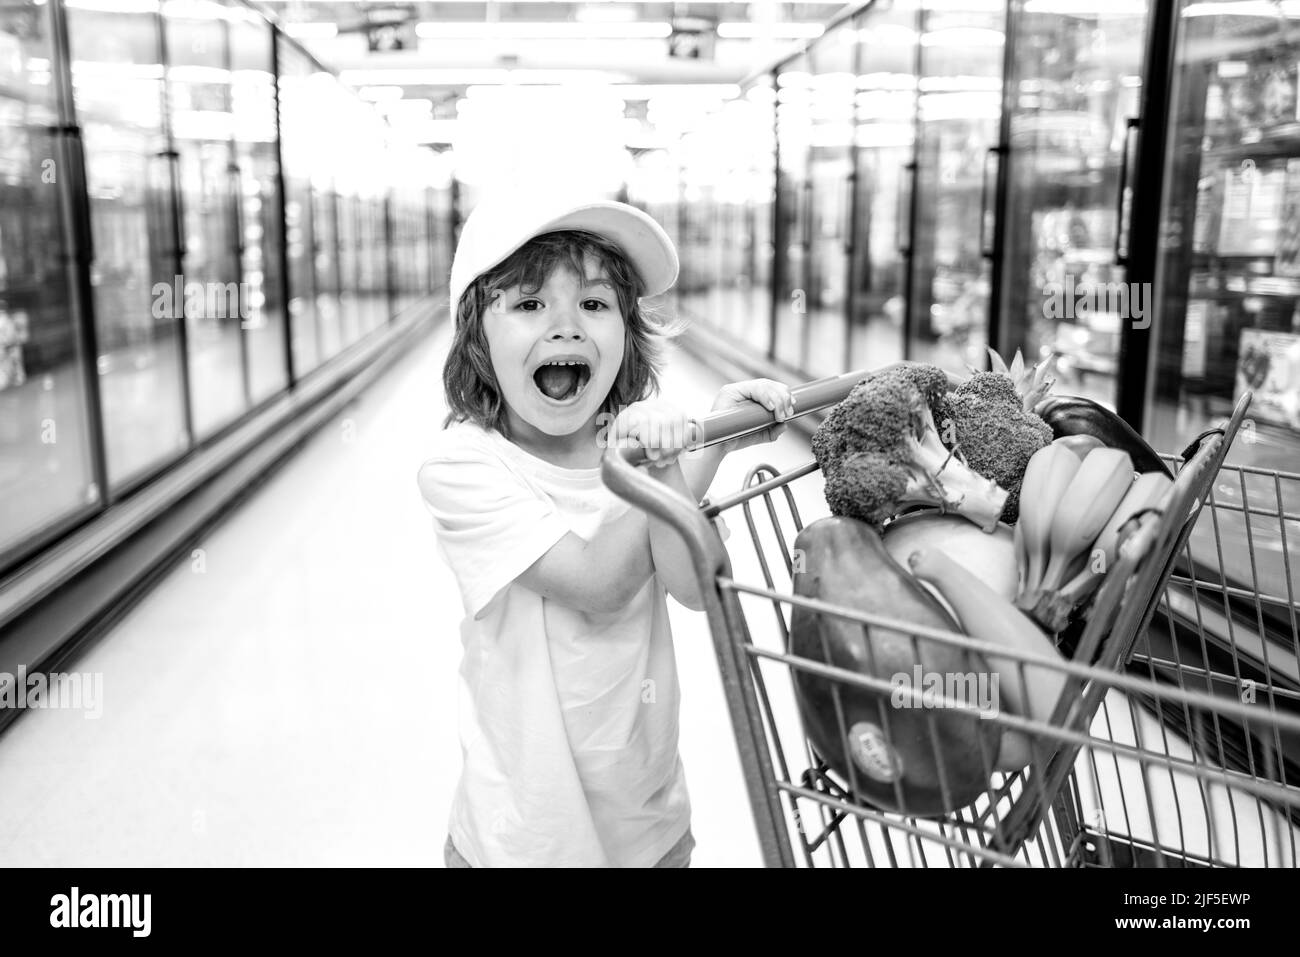 Kleinkind Junge mit Einkaufstasche im Supermarkt. Kinder einkaufen im Supermarkt. Supermarkt, Einkaufen mit Kind. Stockfoto